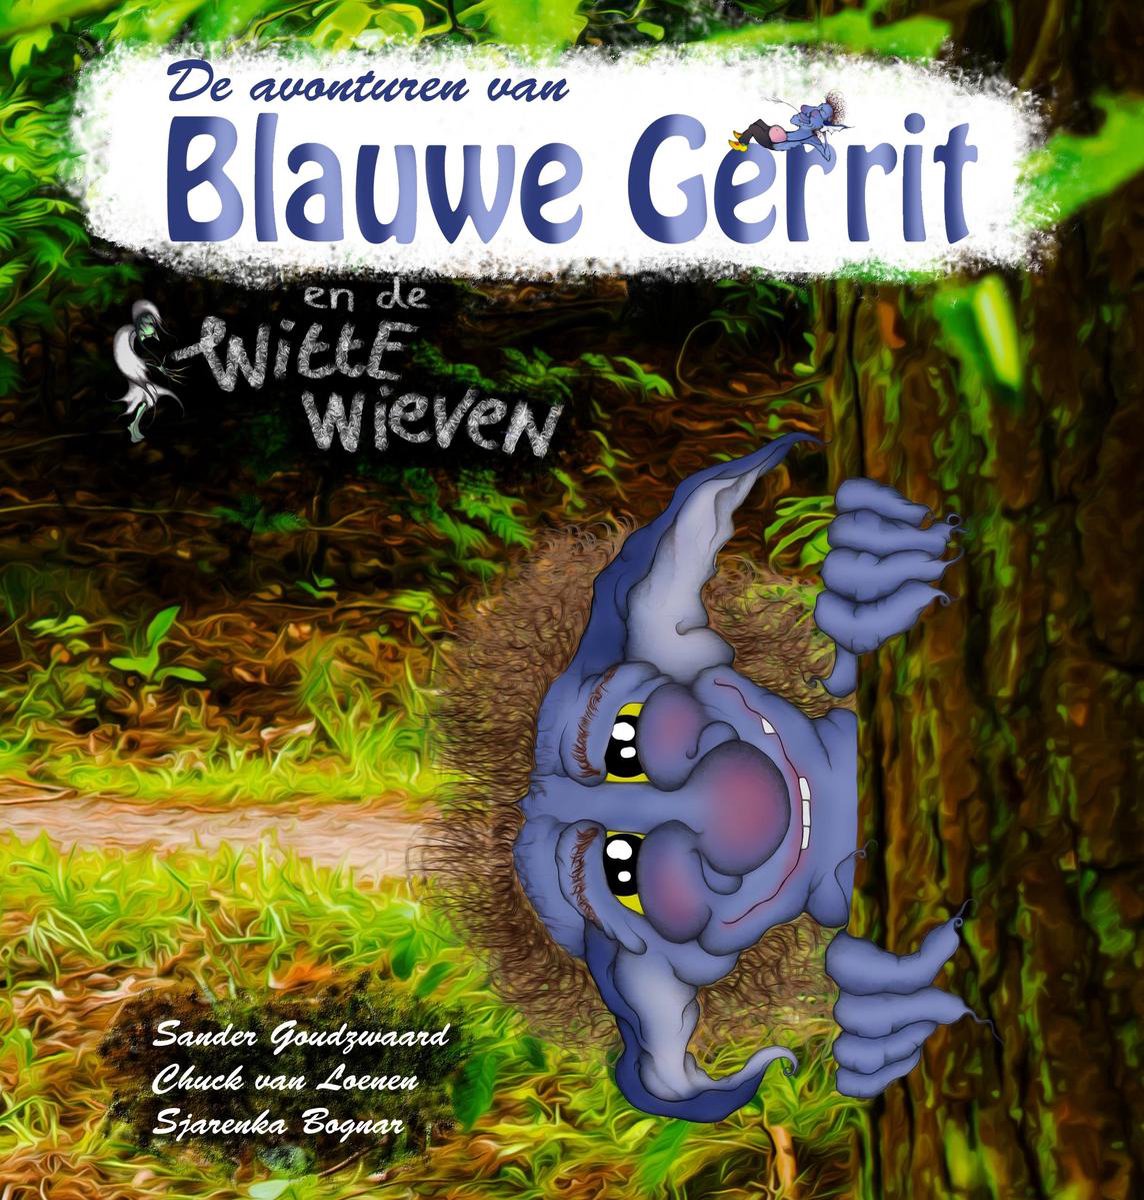 De avonturen van Blauwe Gerrit / 1 en de Witte Wieven / De avonturen van Blauwe Gerrit / 1